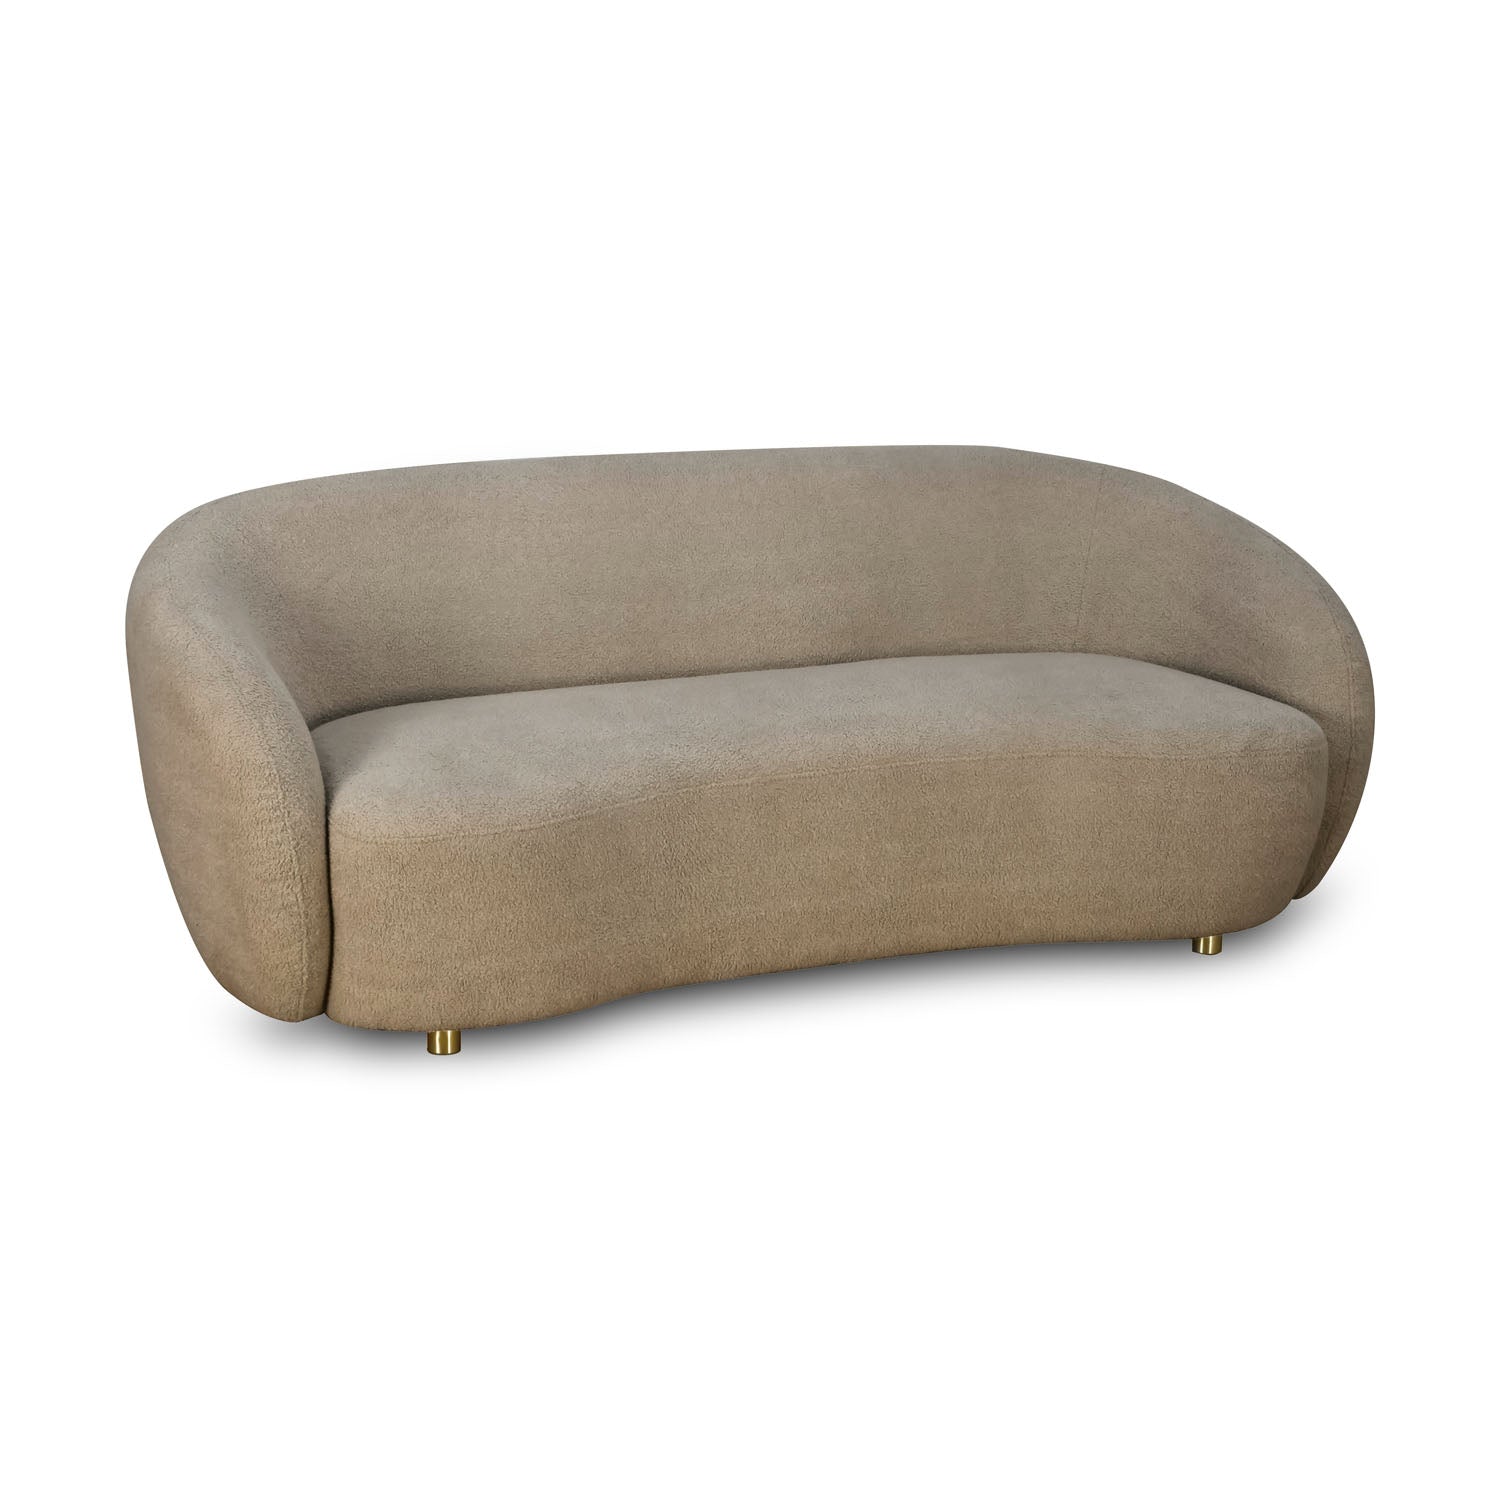 Arias Giorgio 3 Seater Fabric Sofa (Light Brown)